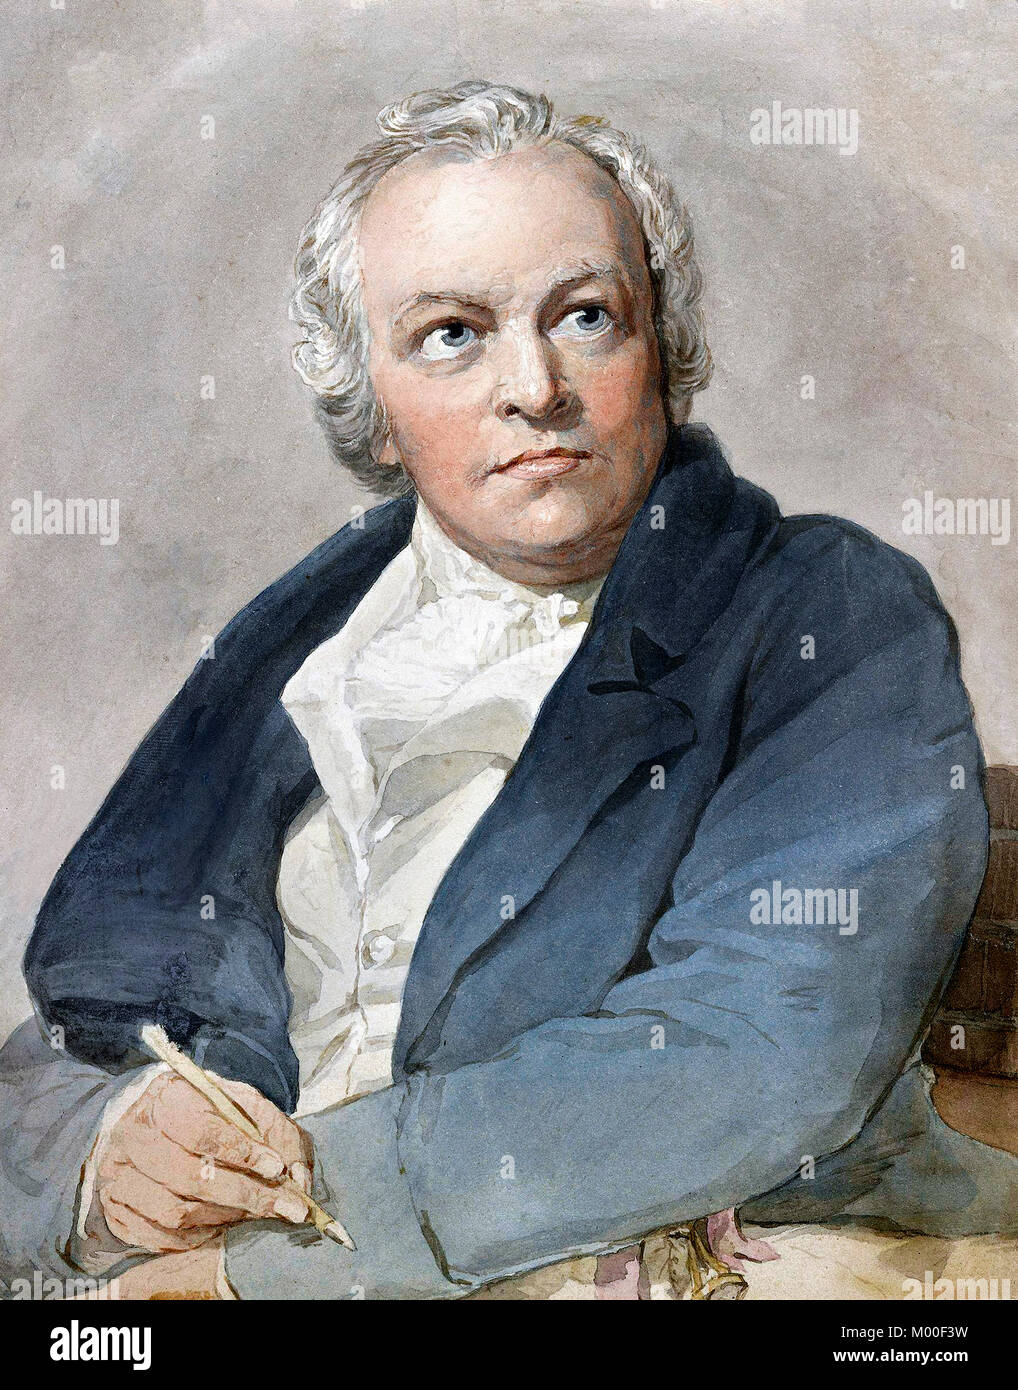 William Blake (1757-1827), englischer Dichter, Maler und Grafiker. Kopieren nach Thomas Phillips, Aquarell auf Papier, 1807. Stockfoto